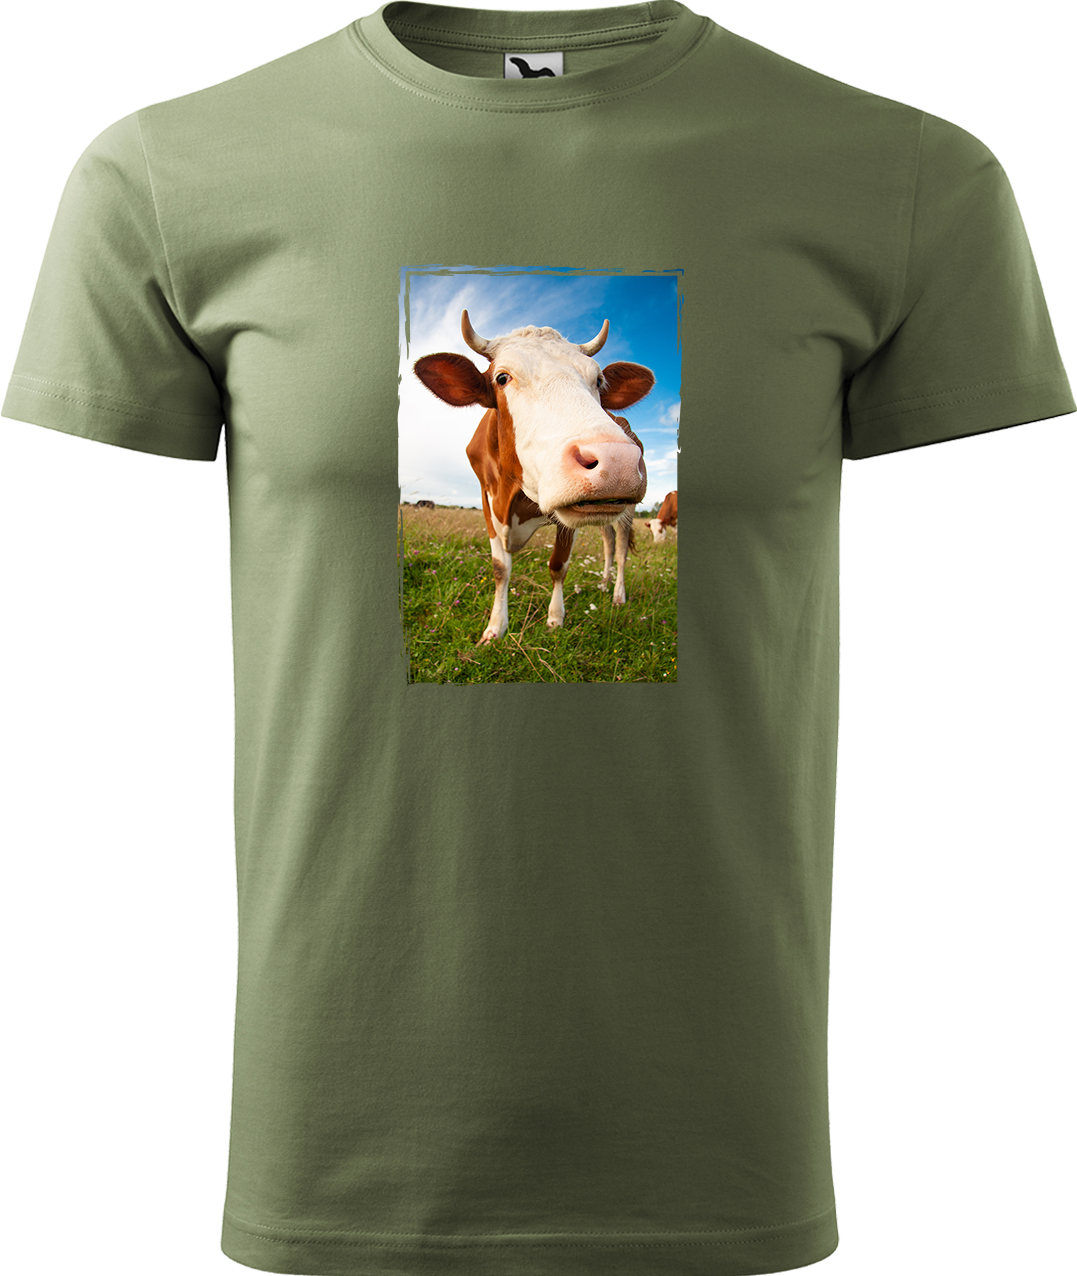 Pánské tričko s krávou - Na pastvě Velikost: M, Barva: Světlá khaki (28), Střih: pánský